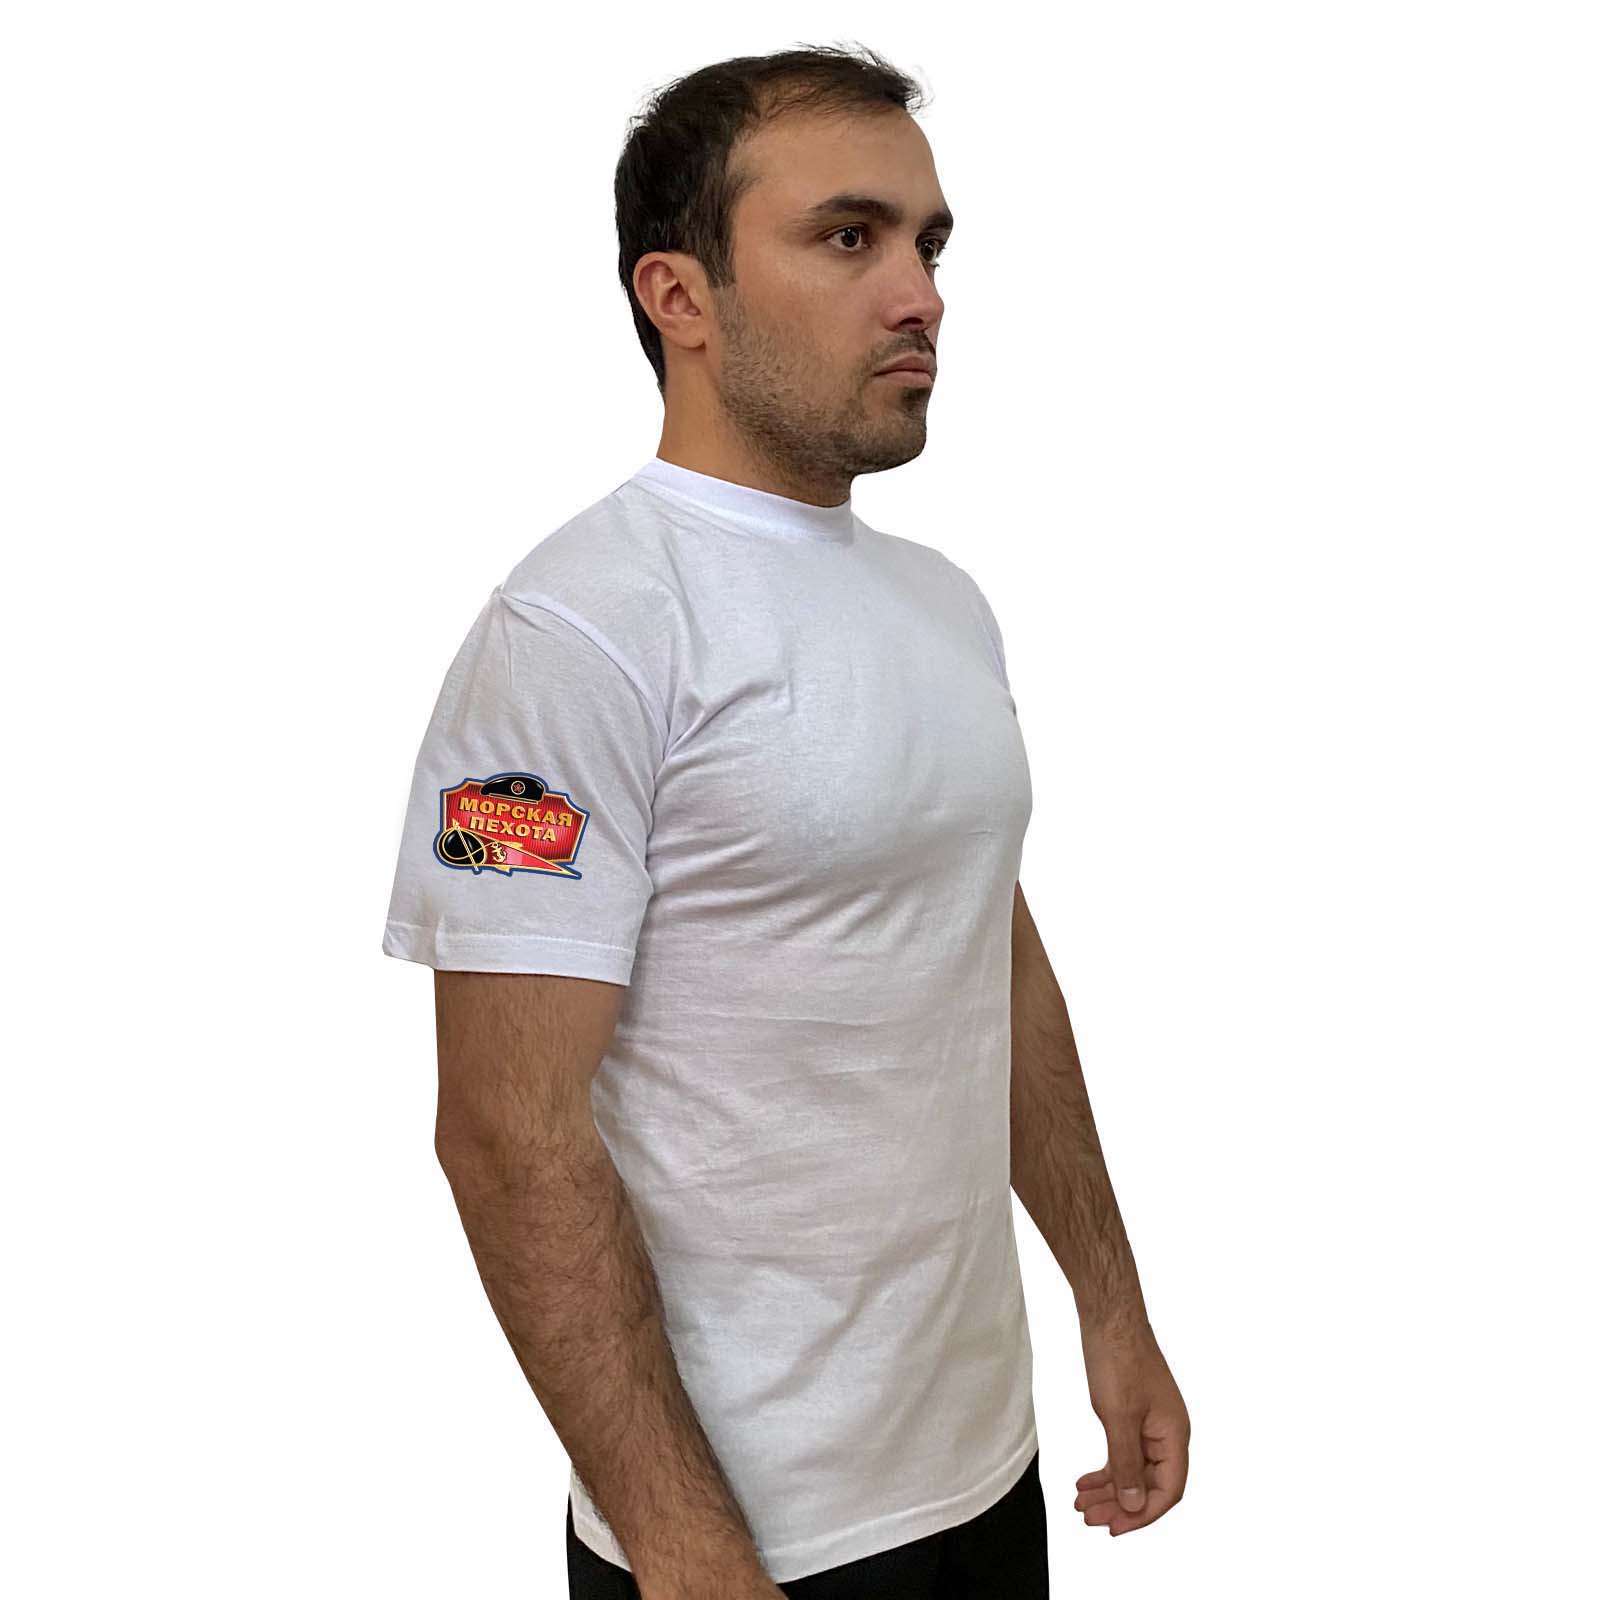 Белая футболка с термотрансфером "Морская пехота" на рукаве